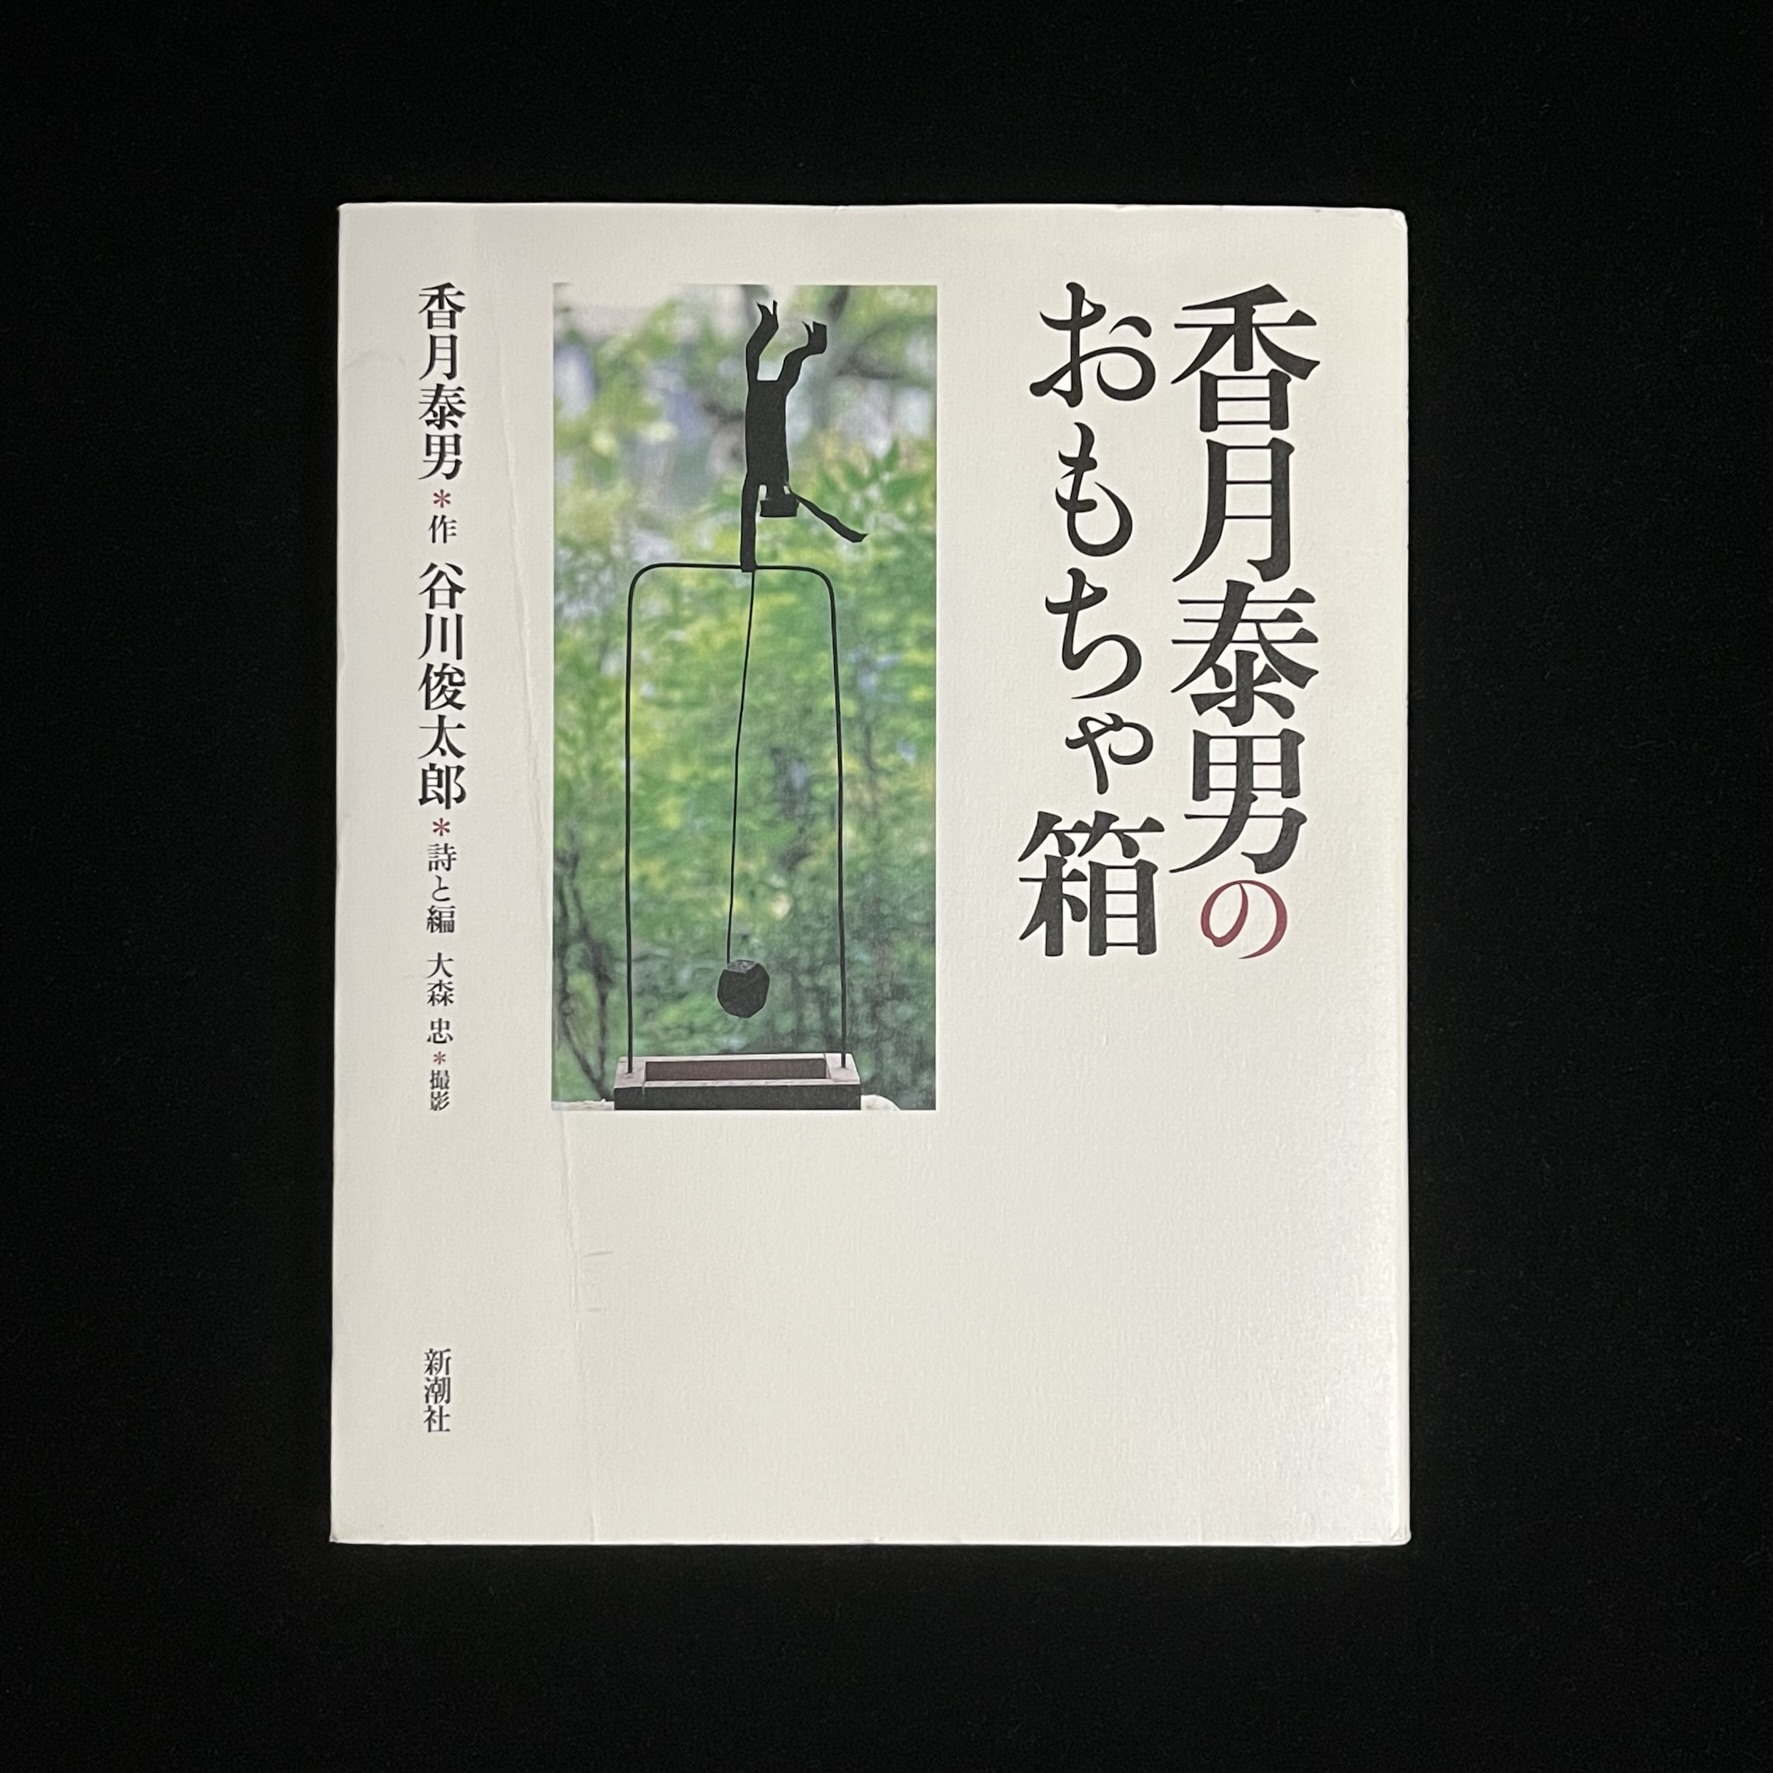 『香月泰男のおもちゃ箱』の本の表紙の写真。緑の木々を背景に、鉄棒で片手大車輪をしている香月さんの作品の写真が載っています。